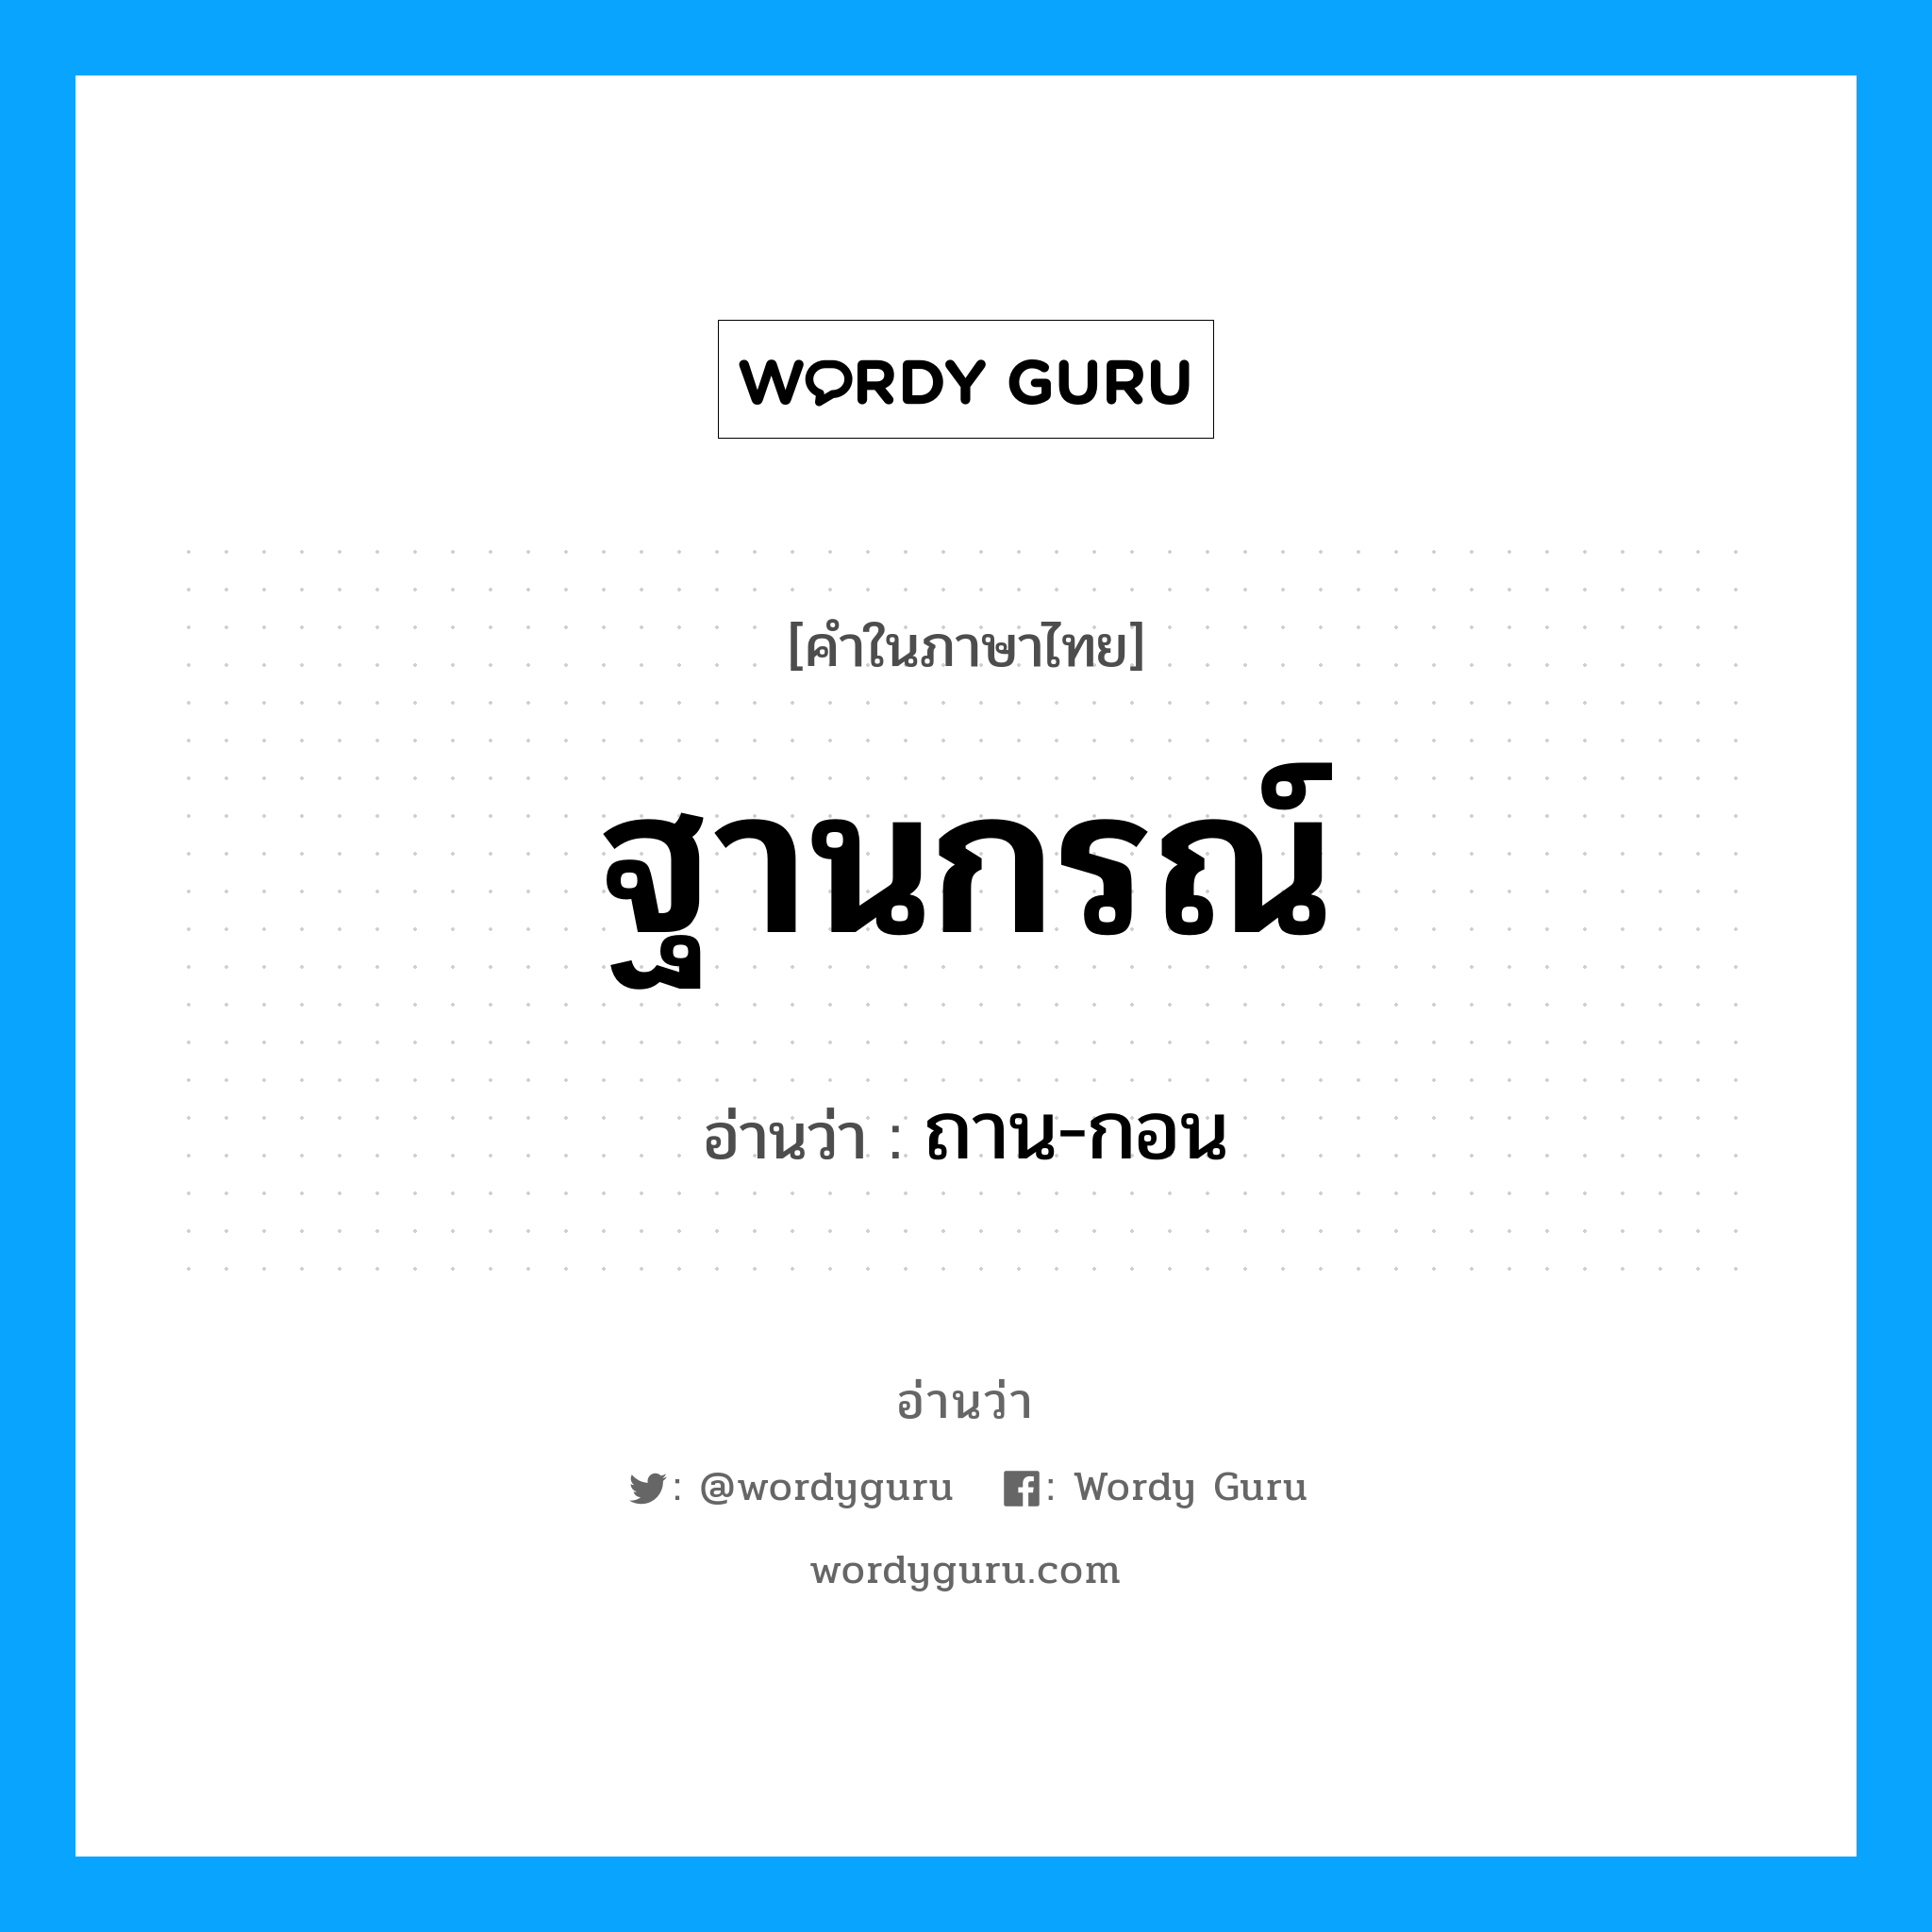 ถาน-กอน เป็นคำอ่านของคำไหน?, คำในภาษาไทย ถาน-กอน อ่านว่า ฐานกรณ์